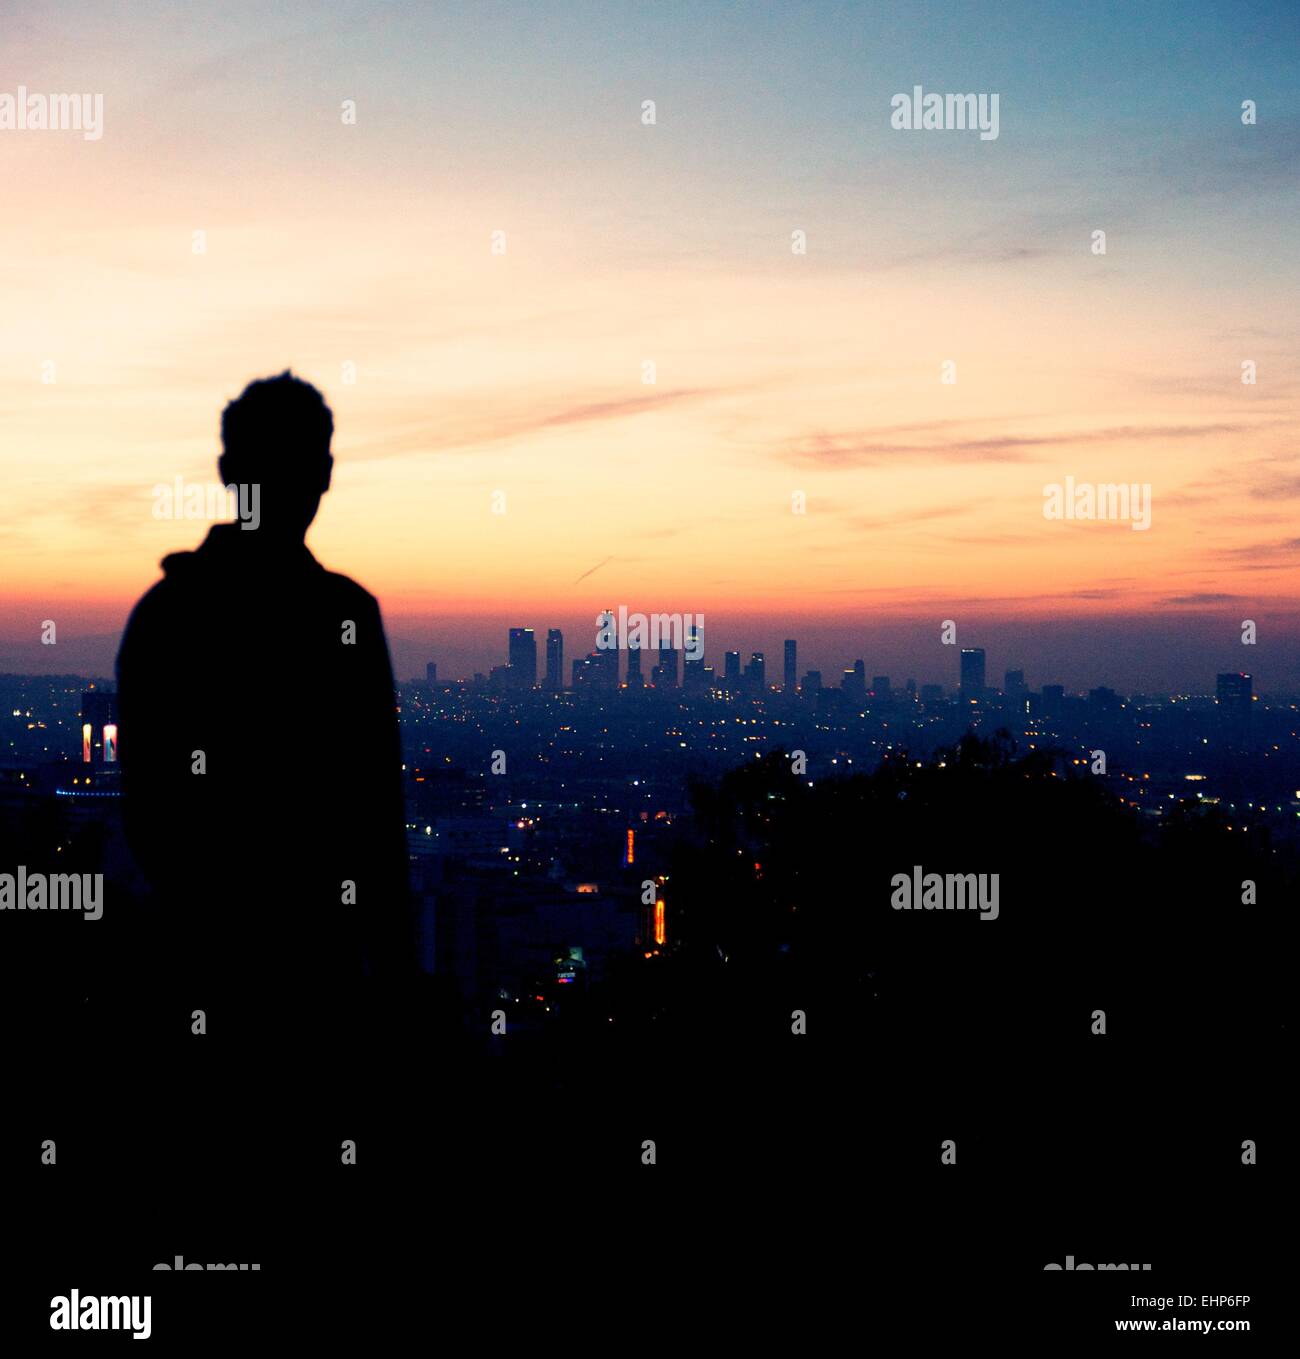 Man looks at sunrise over Los Angeles skyline. Stock Photo